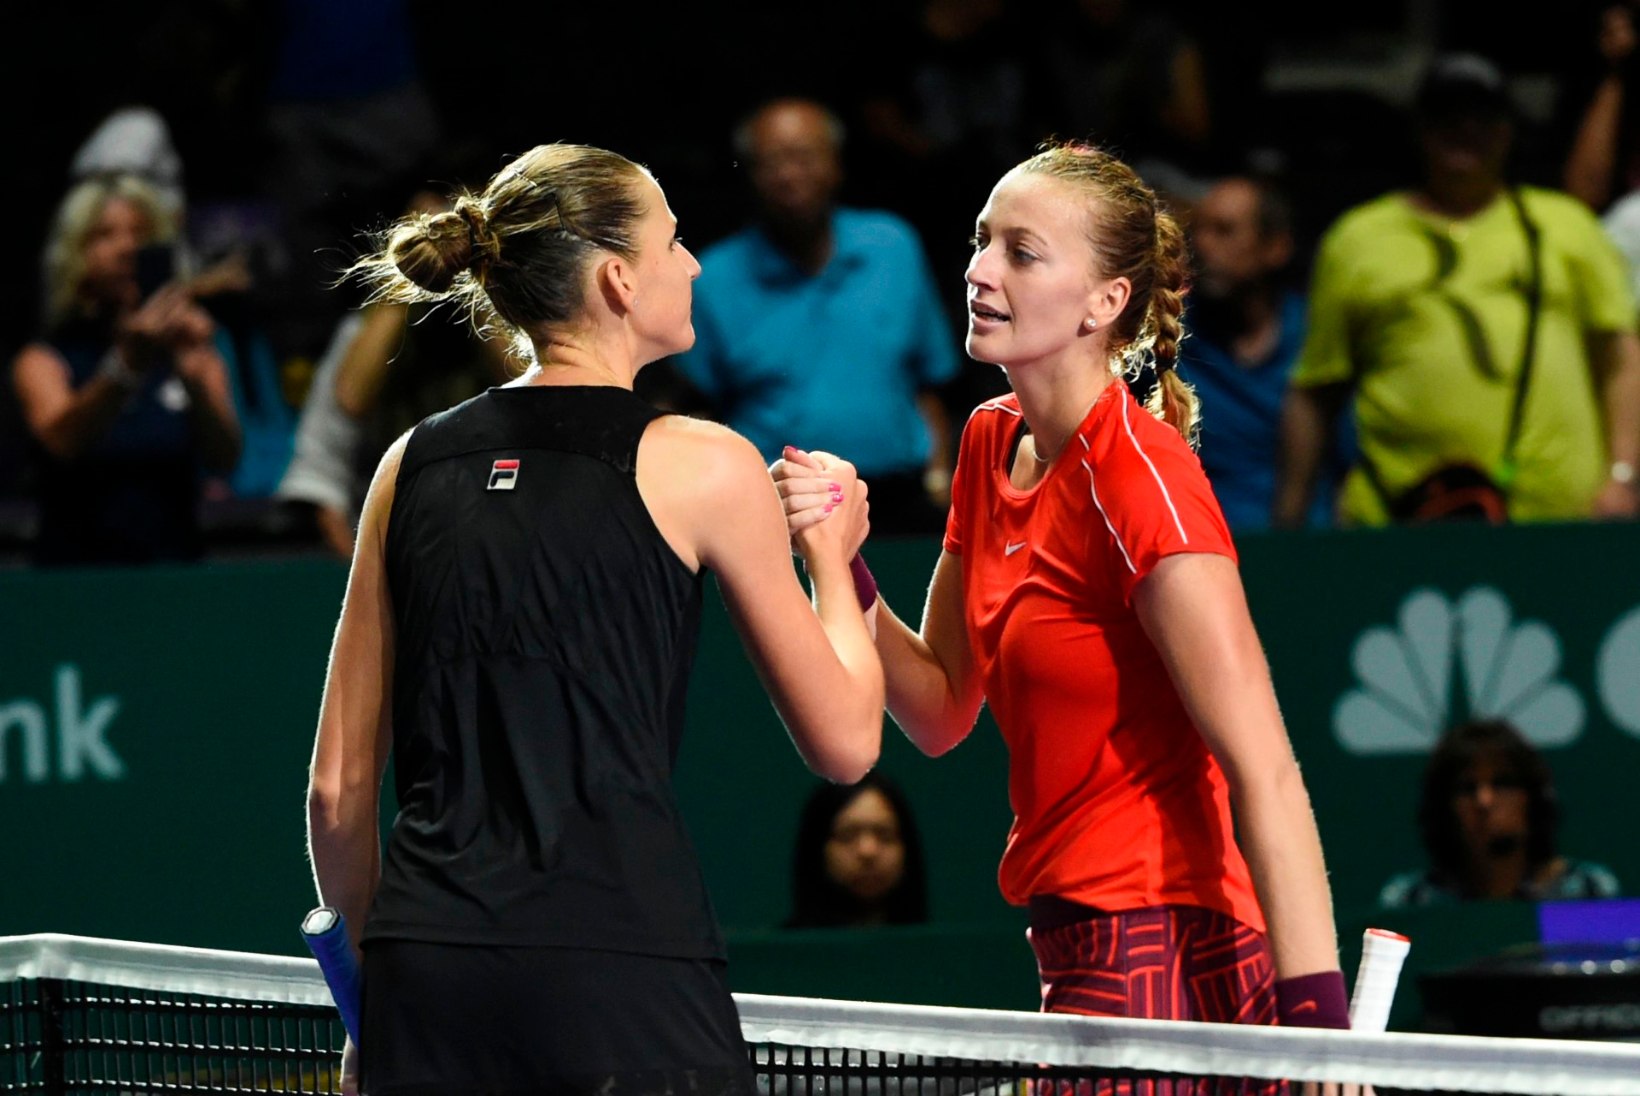 Pliškova alistas Kvitova ja jõudis WTA finaalturniiril esimesena poolfinaali